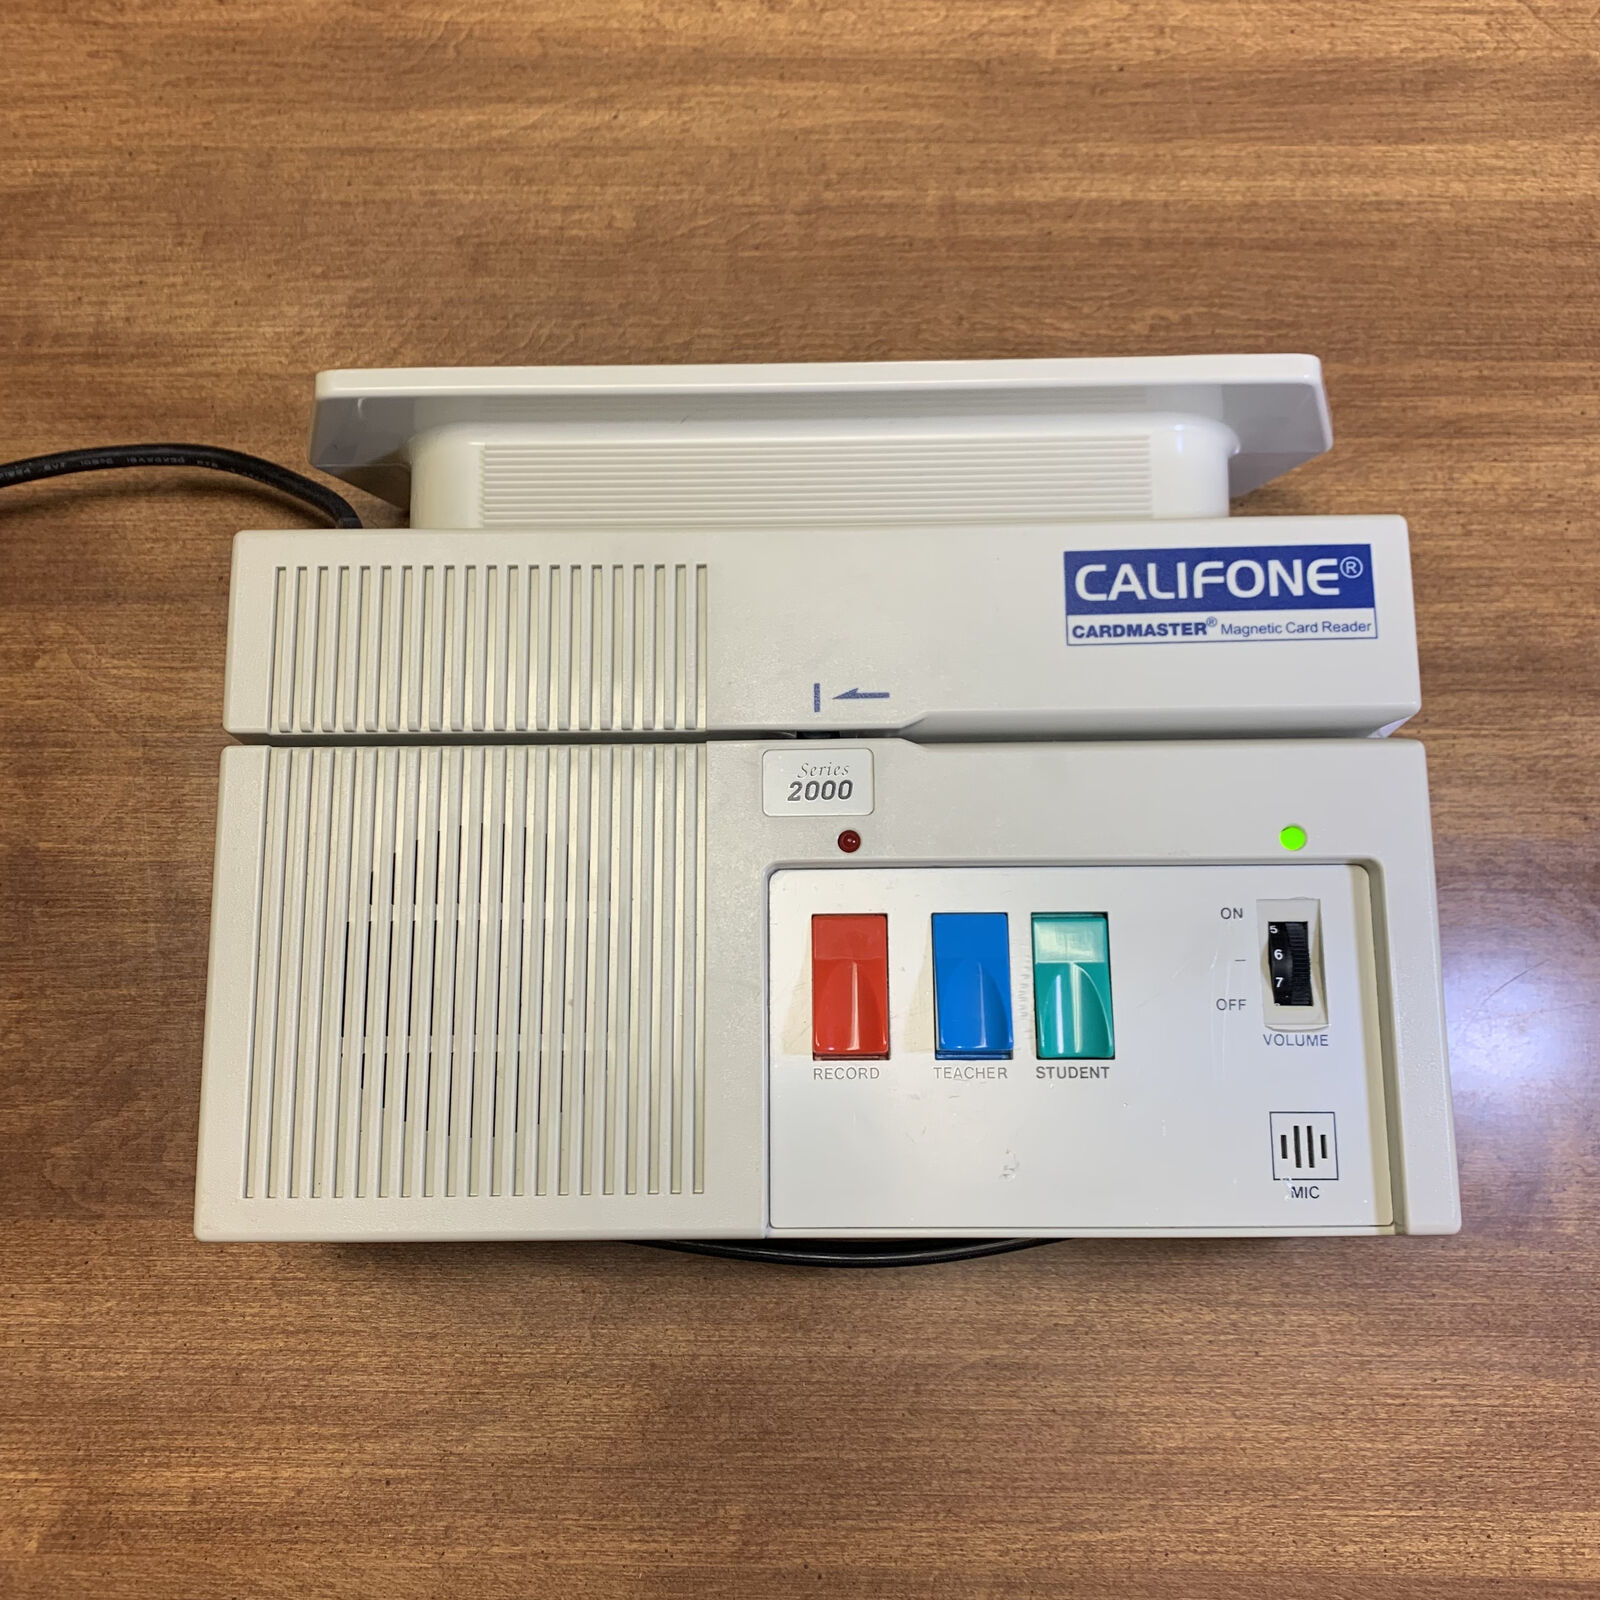 Tested Califone VTG Cardmaster 2000 Series Magnetic Card Reader Language Tool